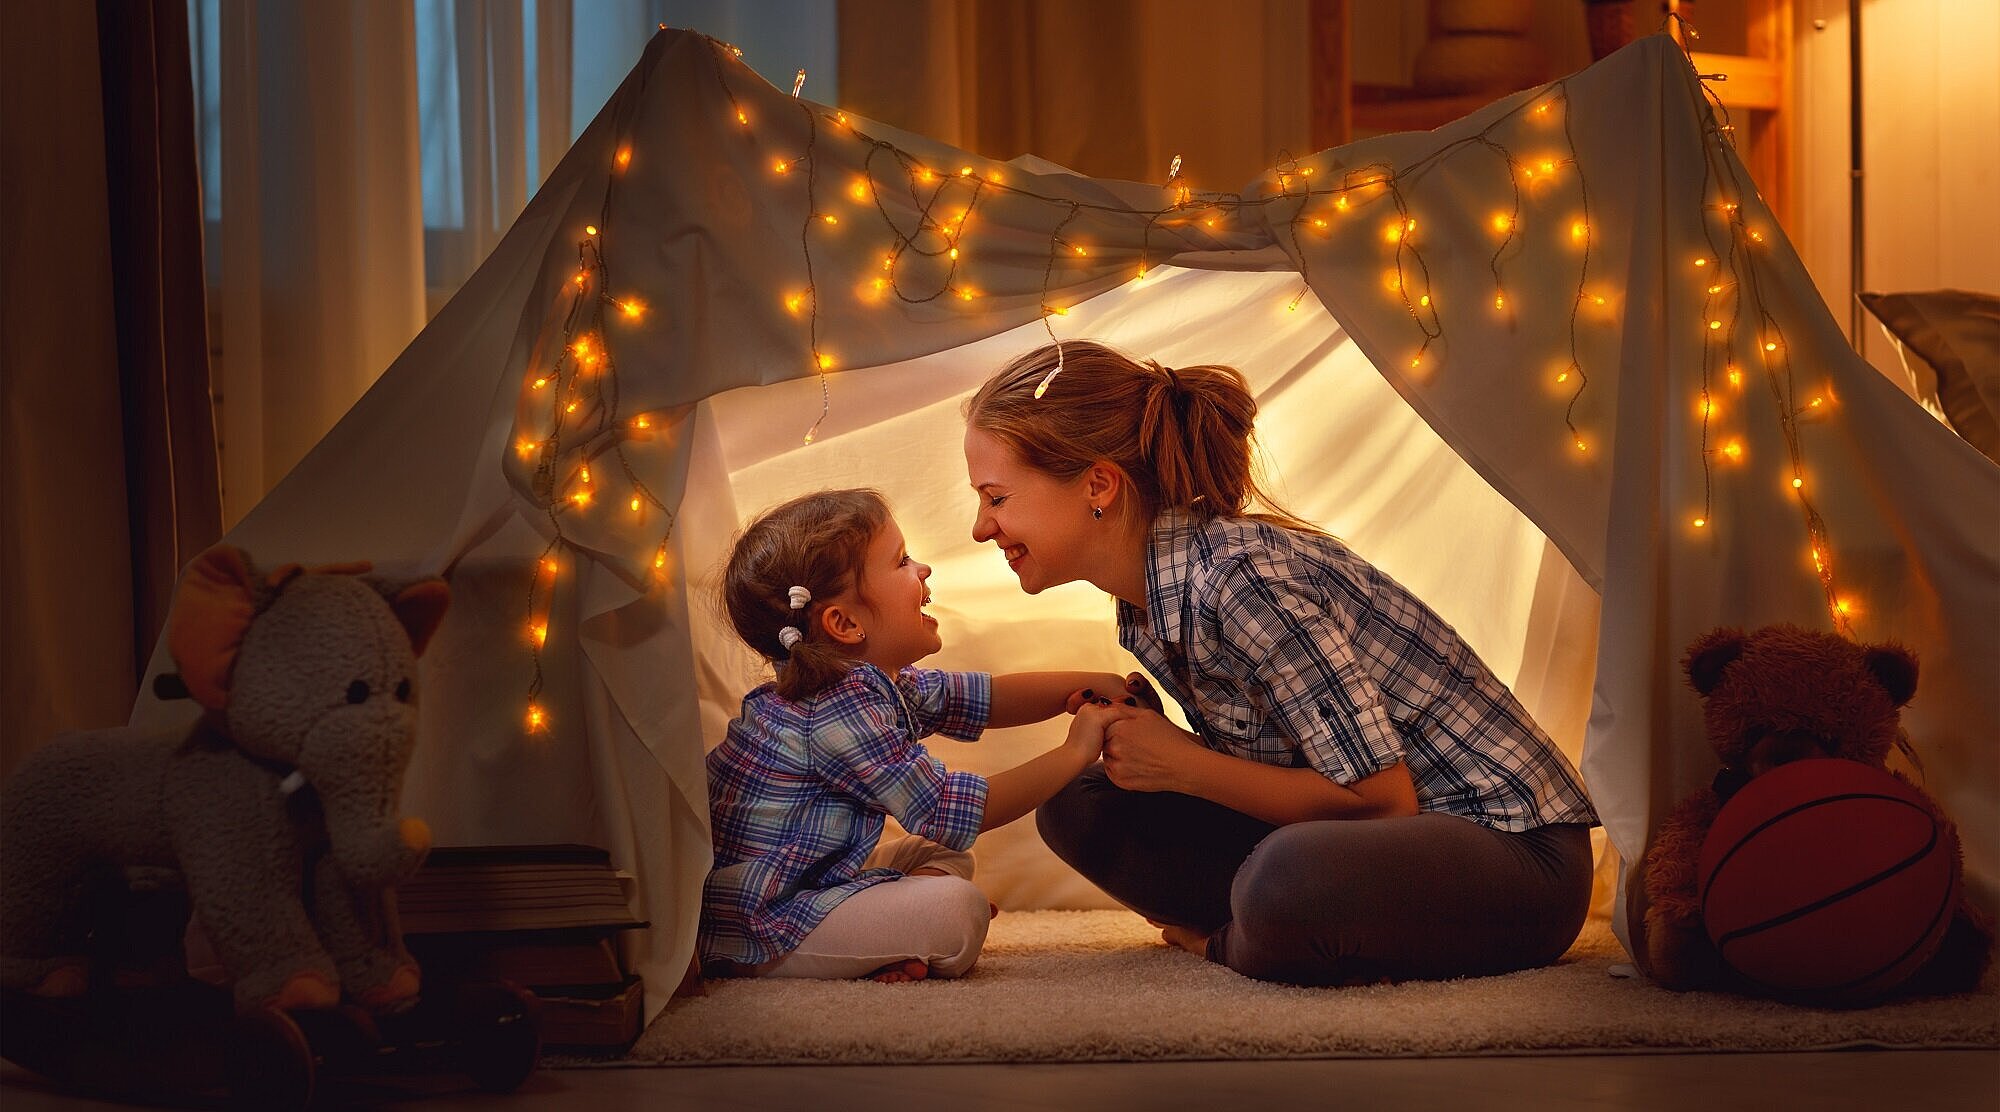 Foto: Mutter und Kind sitzen in einem selbstgebauten und beleuchteten Zelt